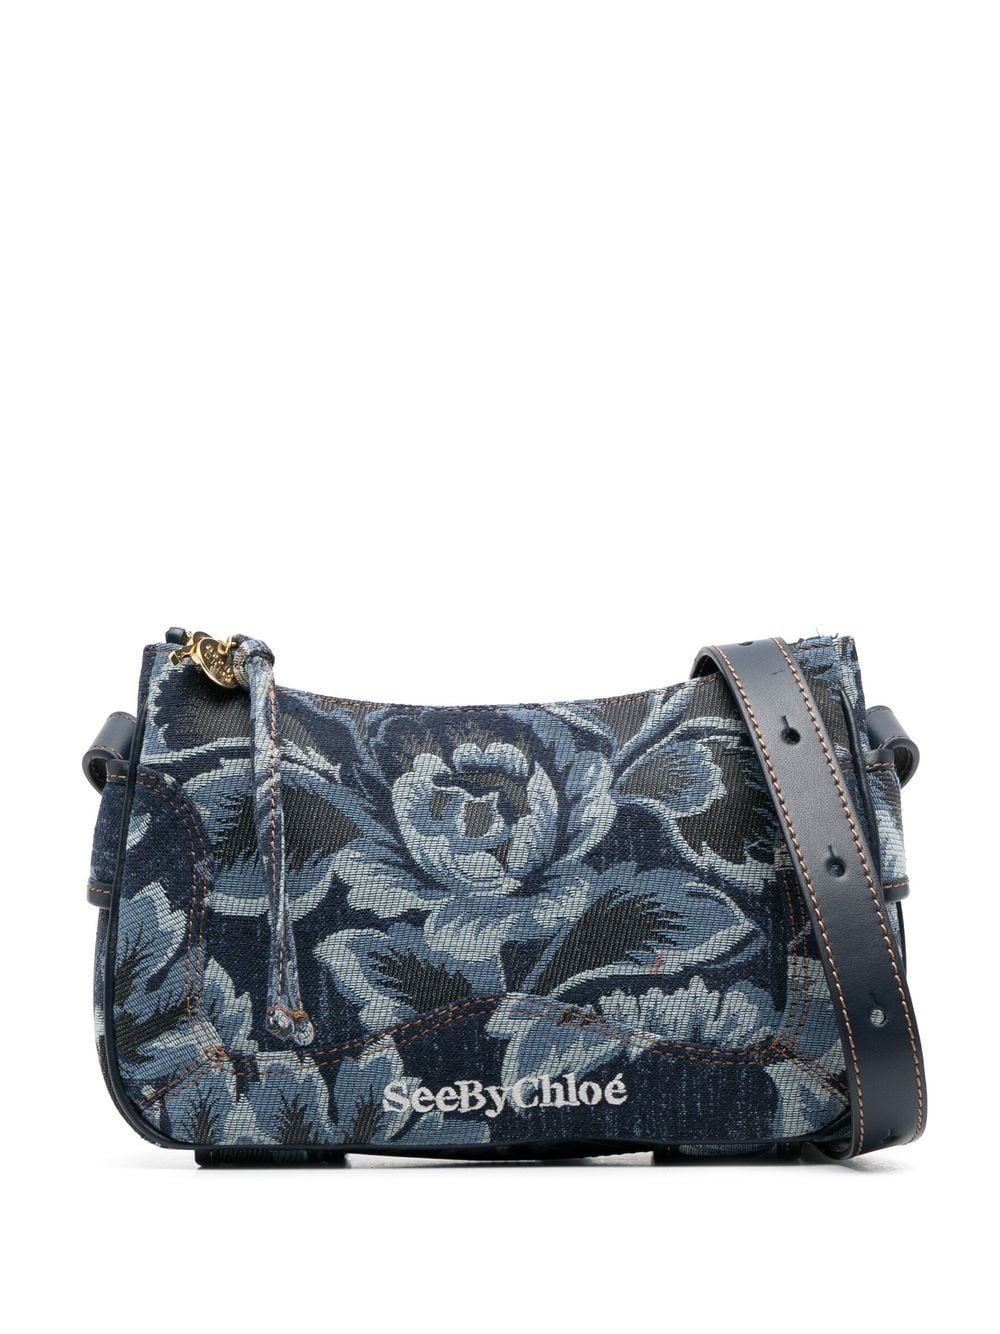 See By Chloé Denim Floral-print Shoulder Bag